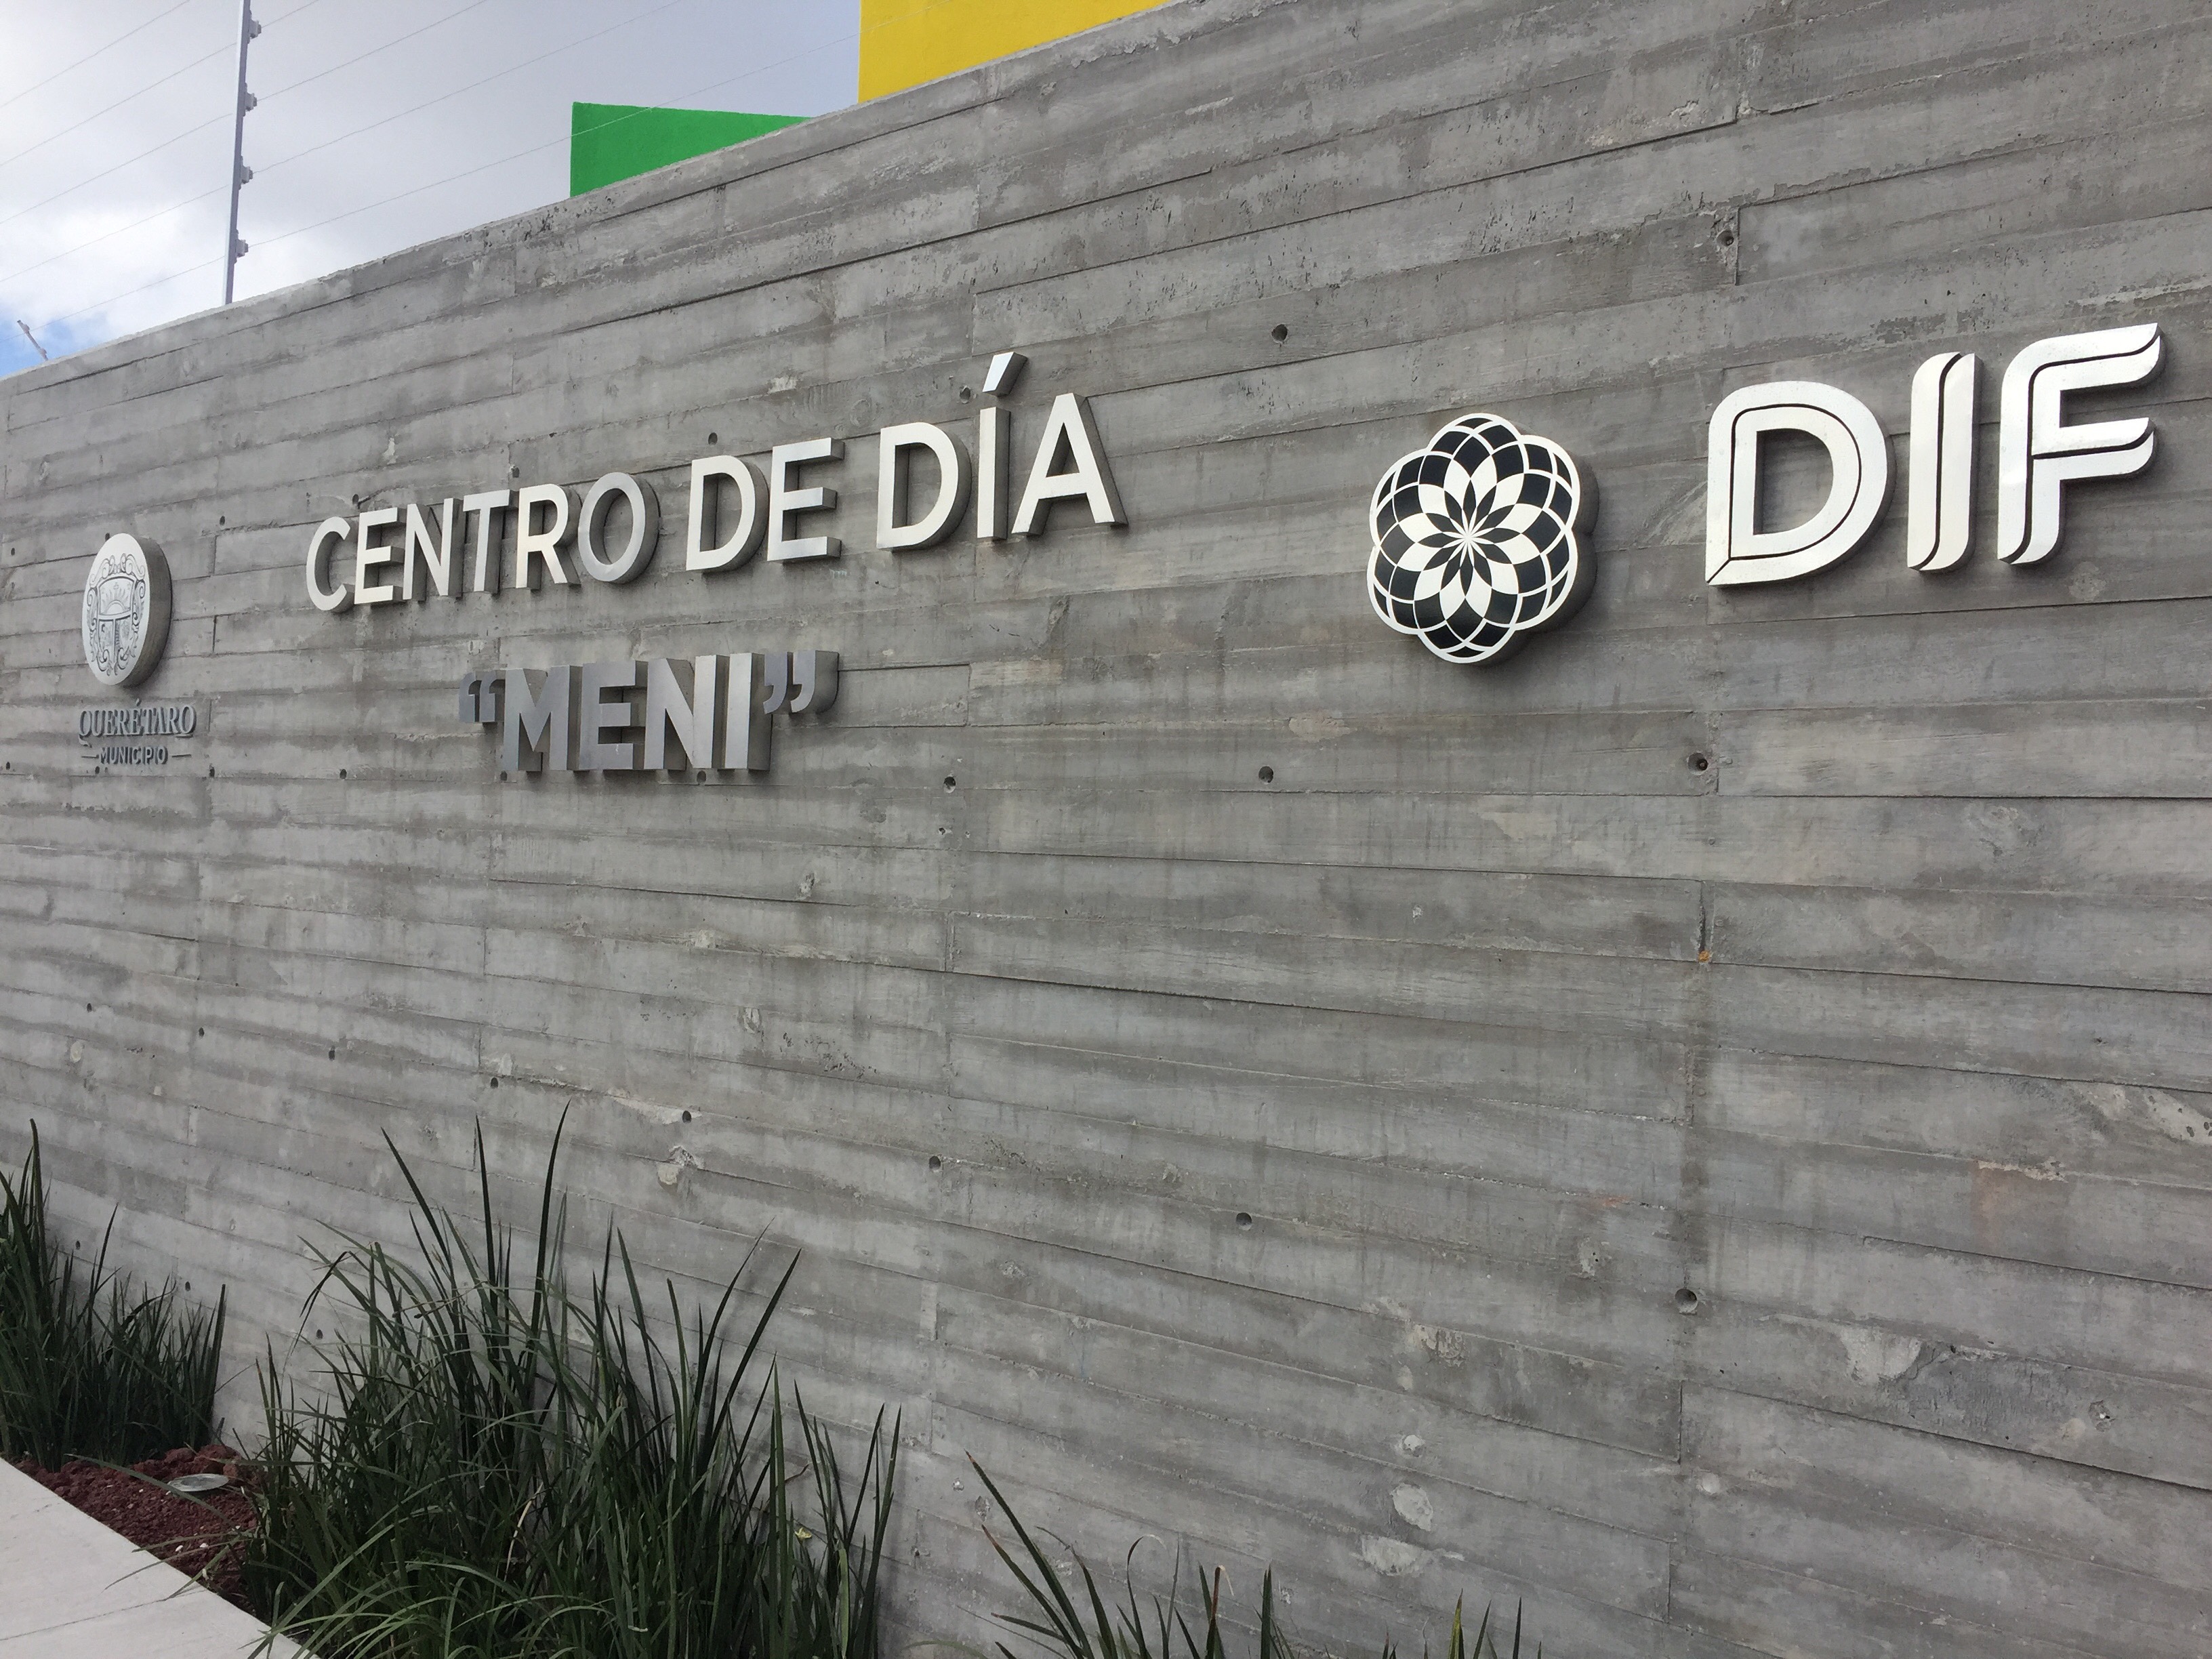  Administración municipal de Querétaro inaugura tercer centro de día para niños en situación de calle